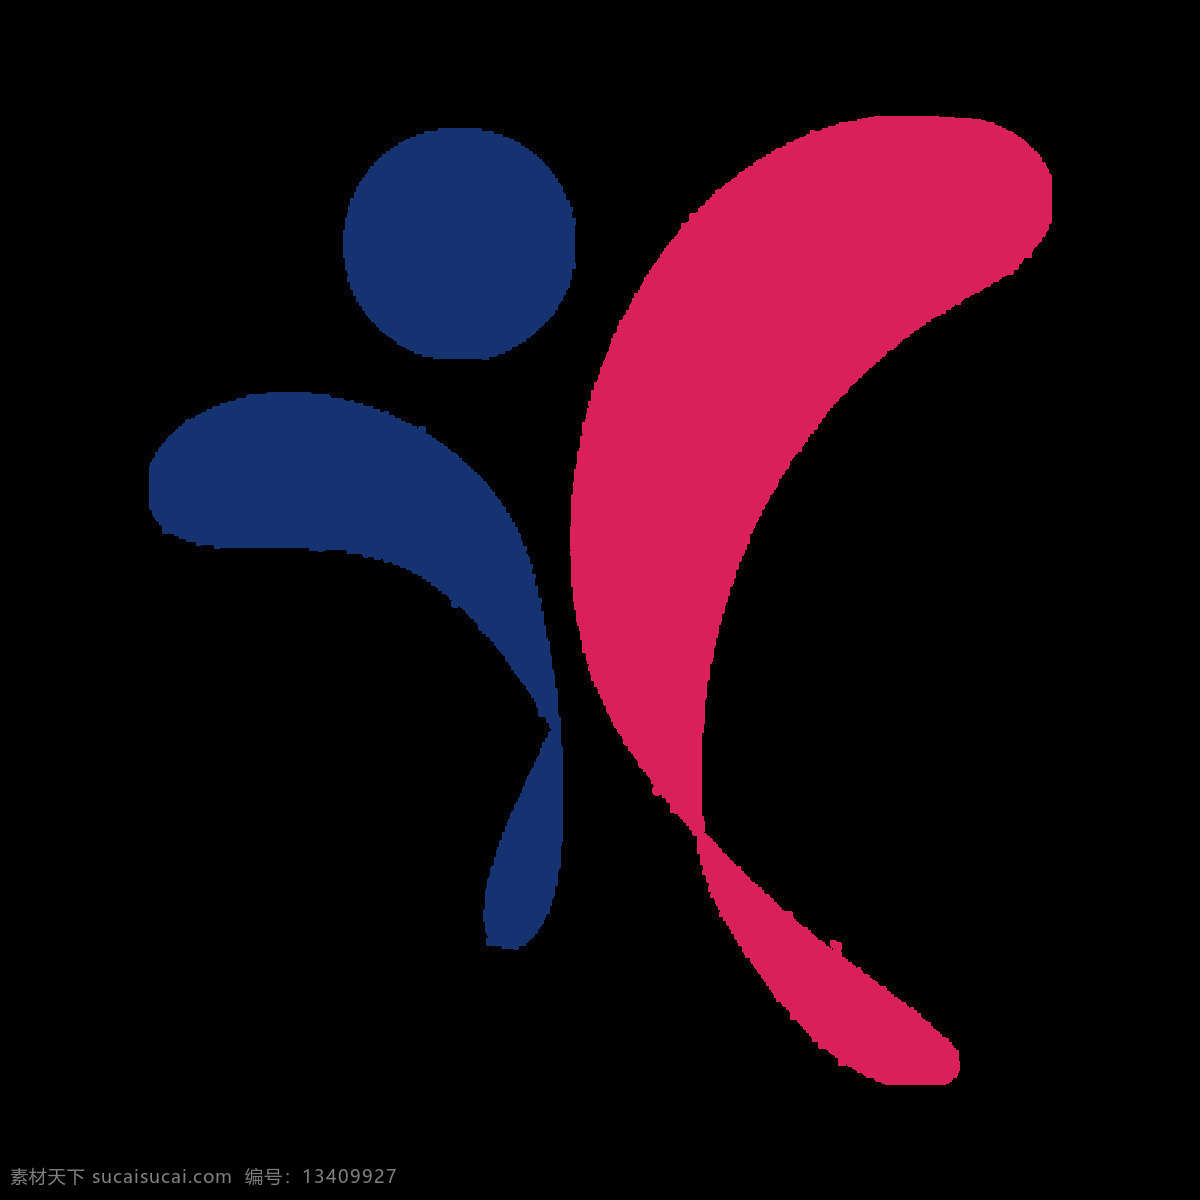 美 年 大 健康 logo 美年大健康 企业 蓝色 红色 标志图标 标志